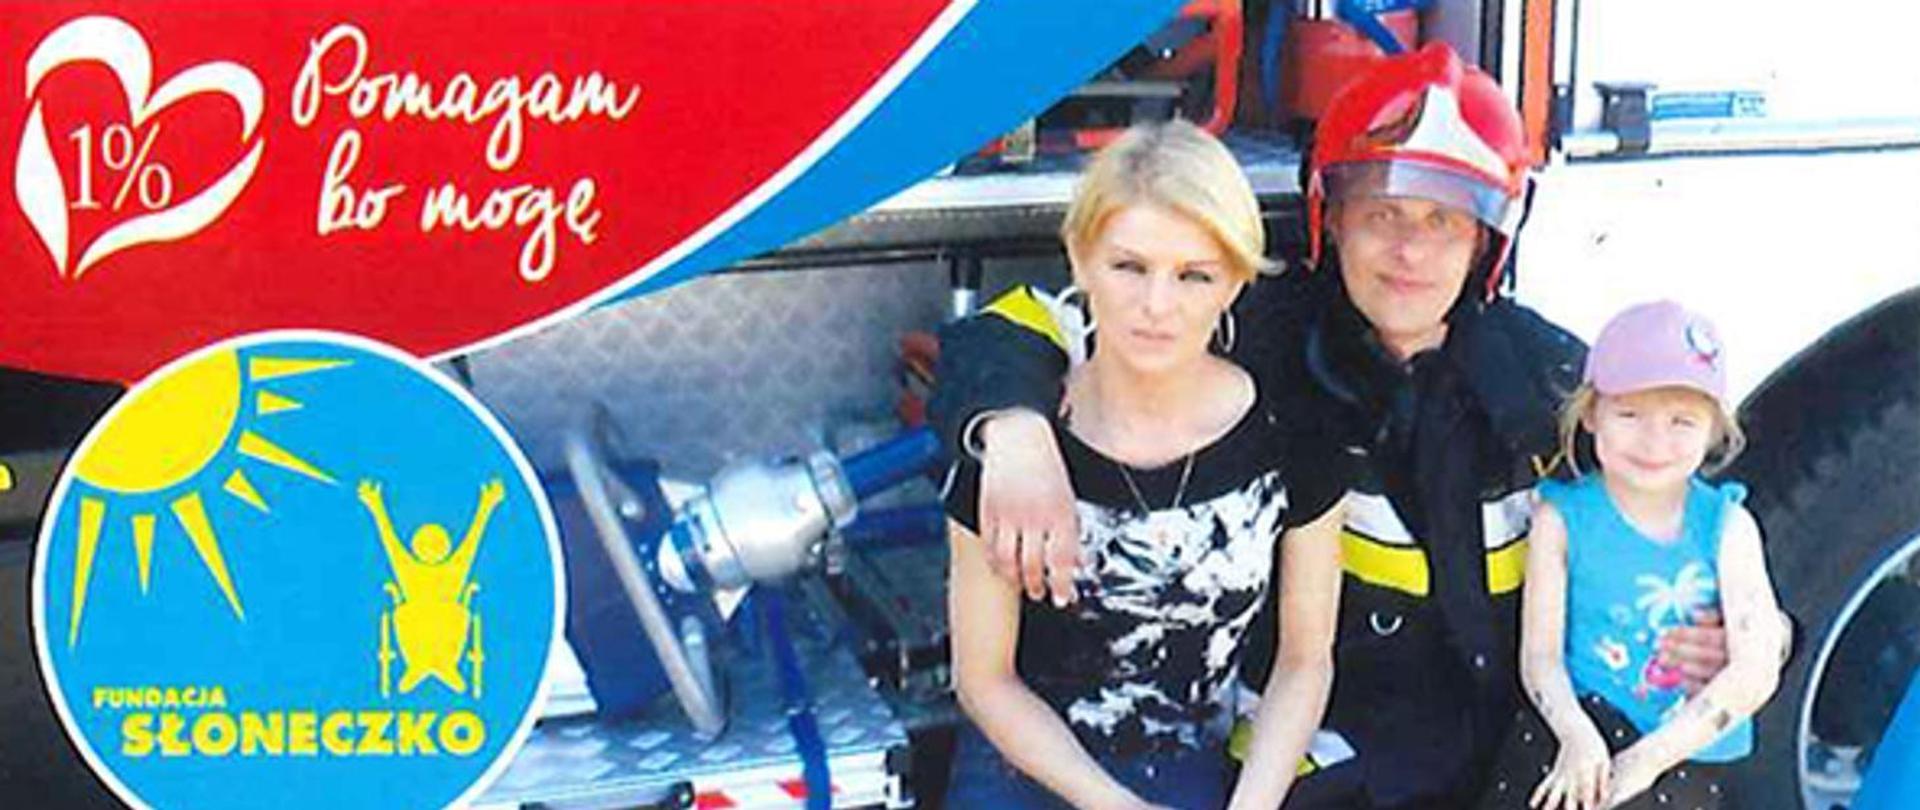 Grafika przedstawiająca strażaka z żoną i dzieckiem siedzącymi na tle wozu strażackiego. W lewym górnym rogu na czerwonym tle napis: Pomagam bo mogę. w lewym dolnym rogu okrągłe niebieskie logo z żółtymi napisami "Fundacja słoneczko".